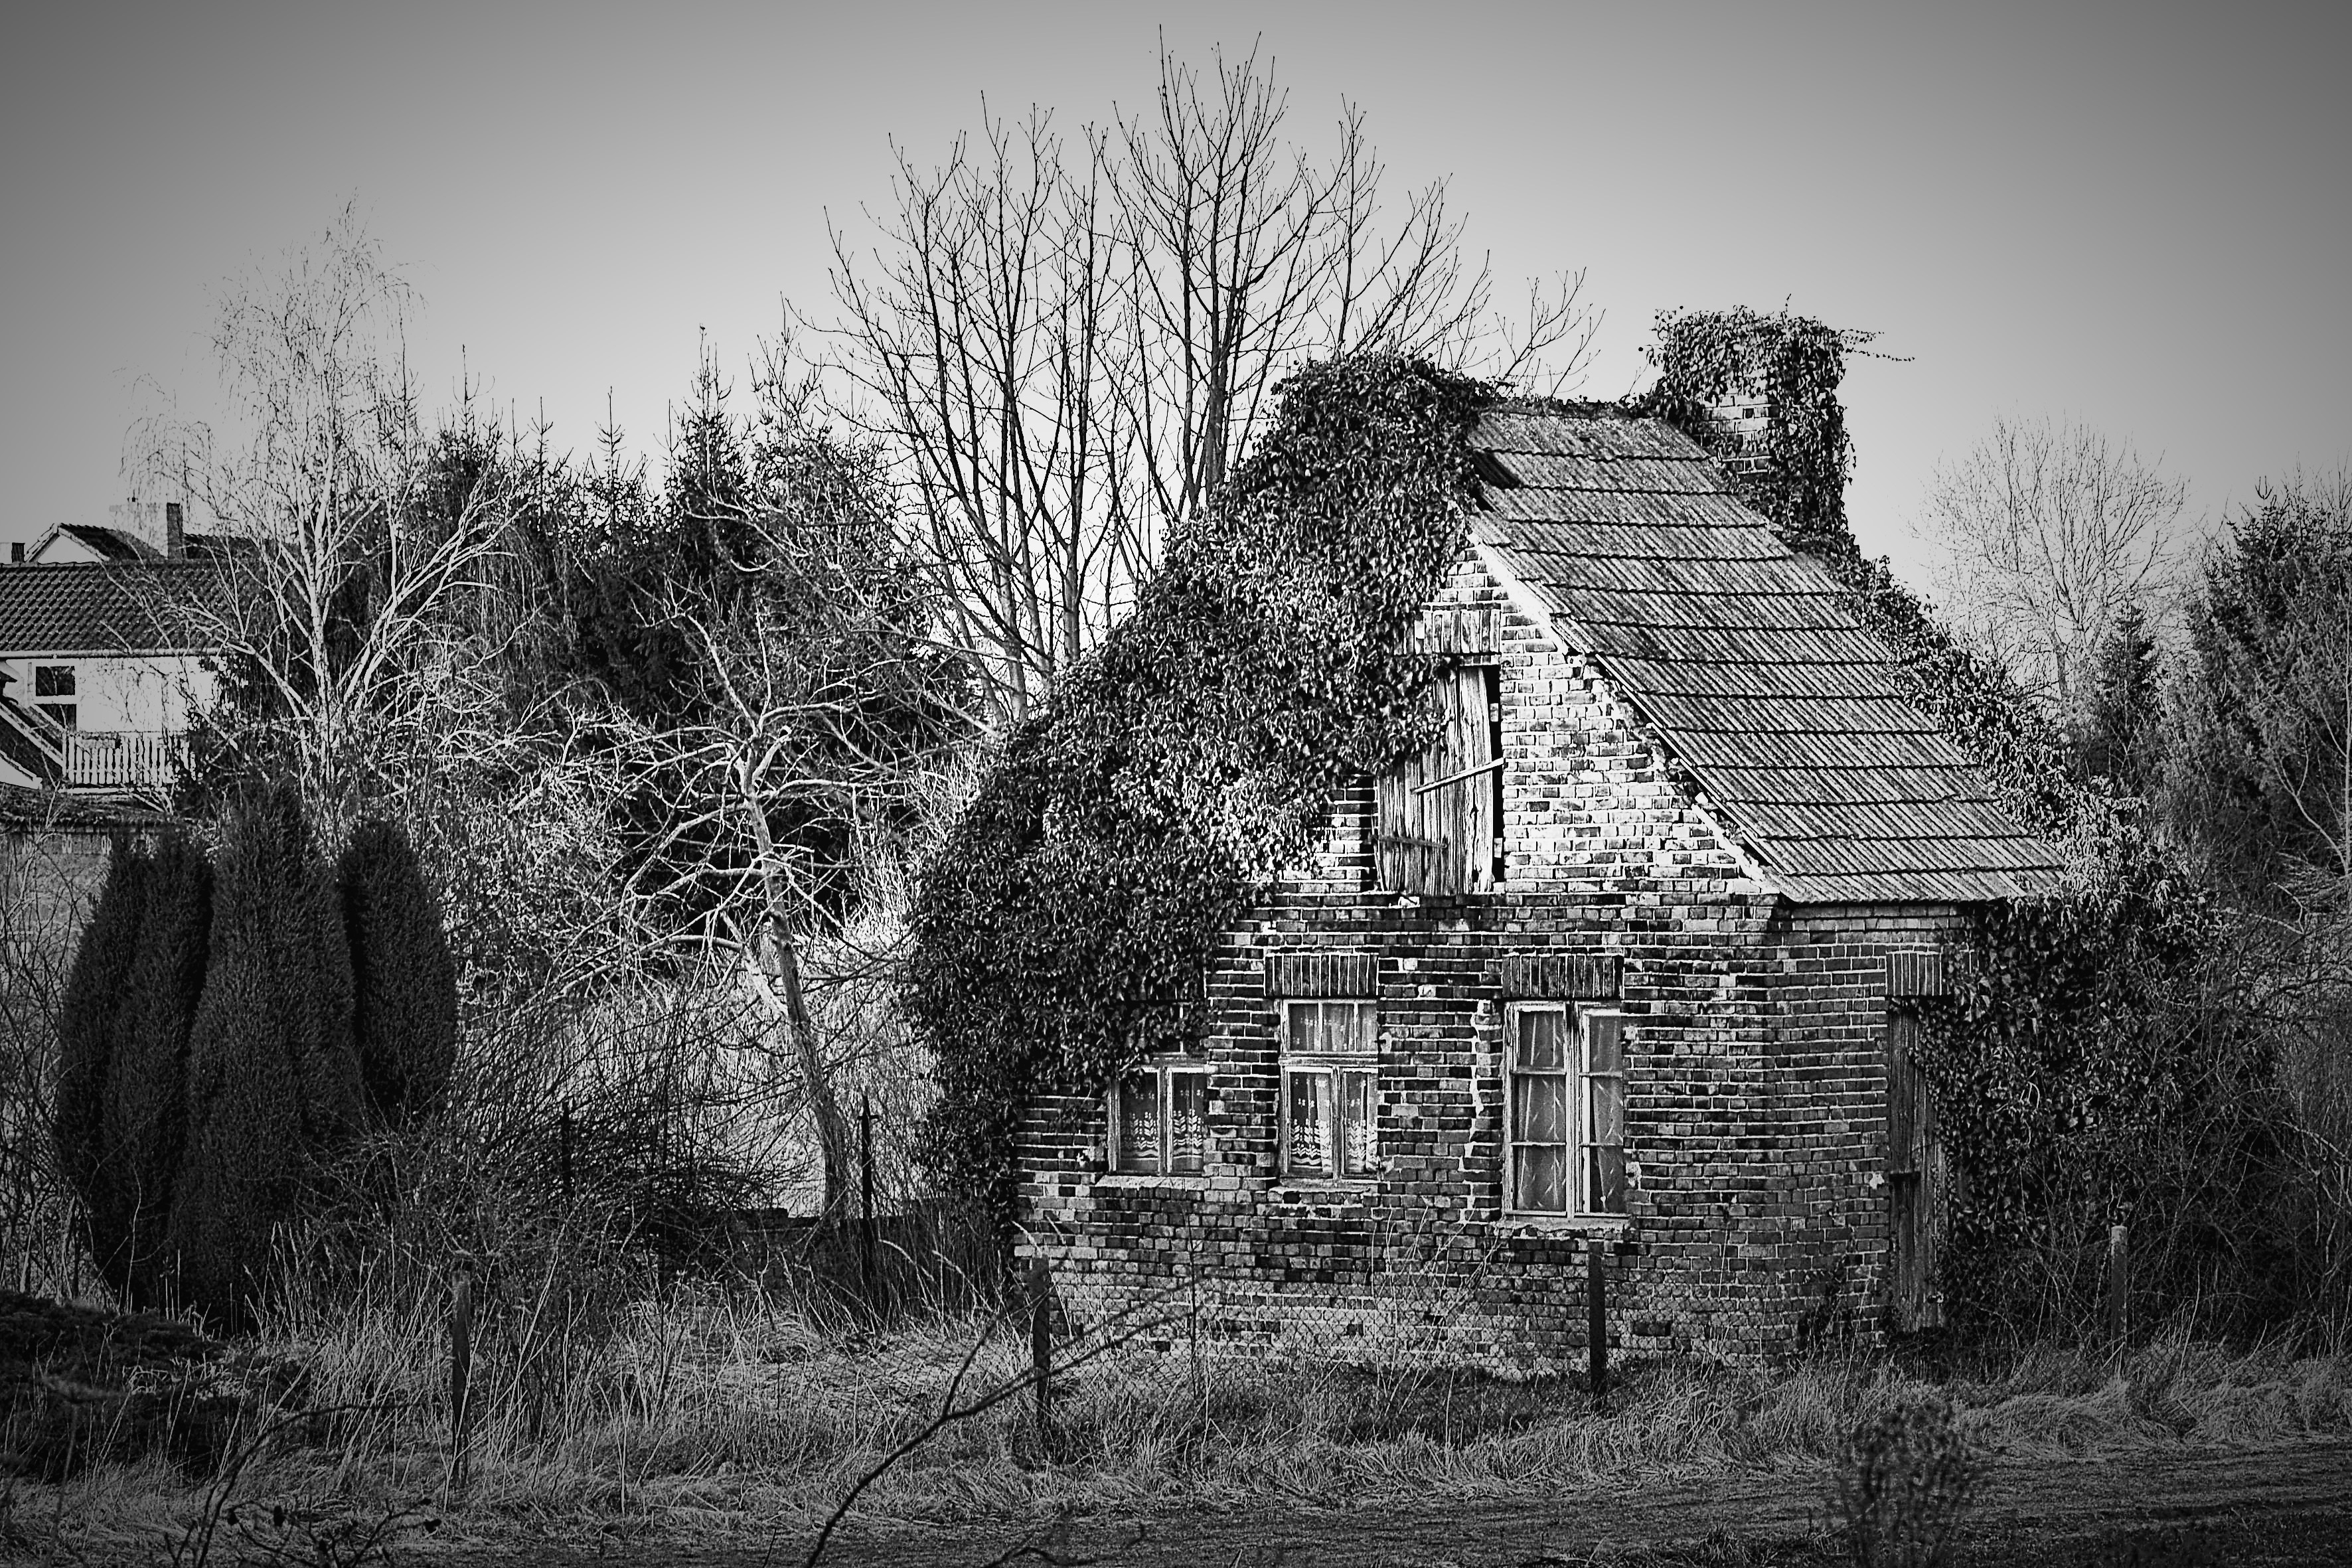 gray wooden house near trees